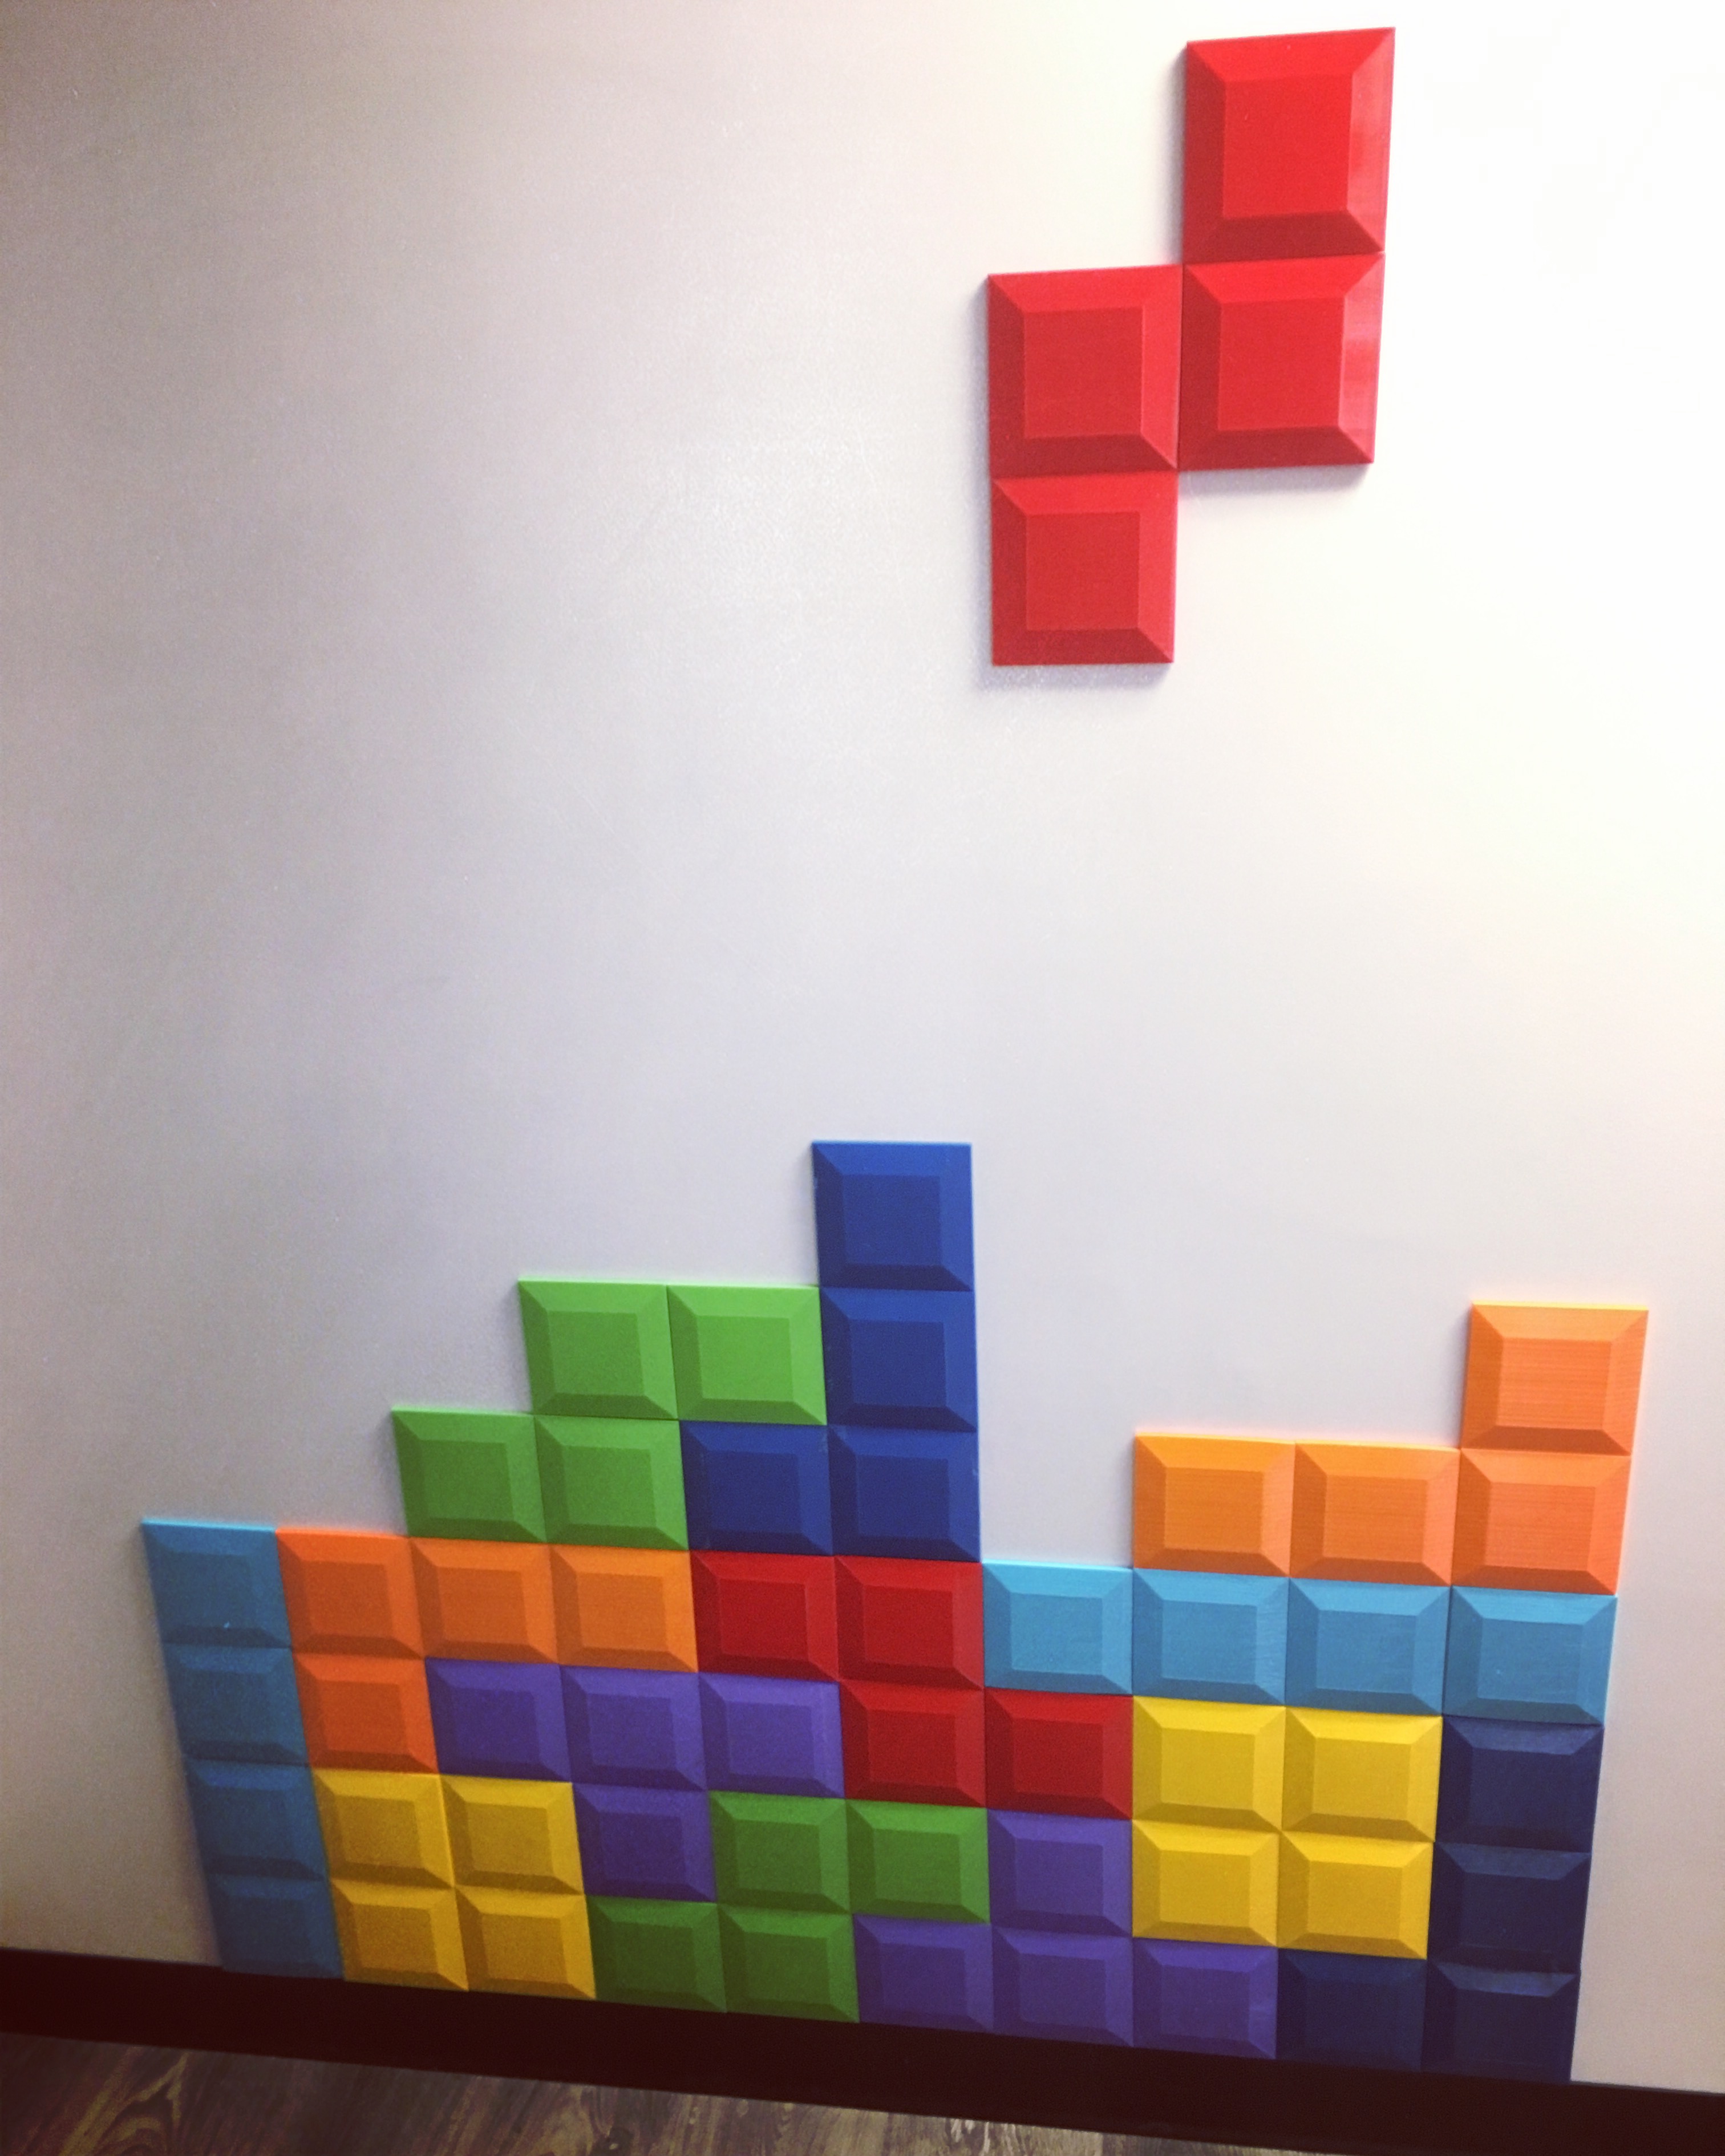 Tetromino Tile for Tetris Wall